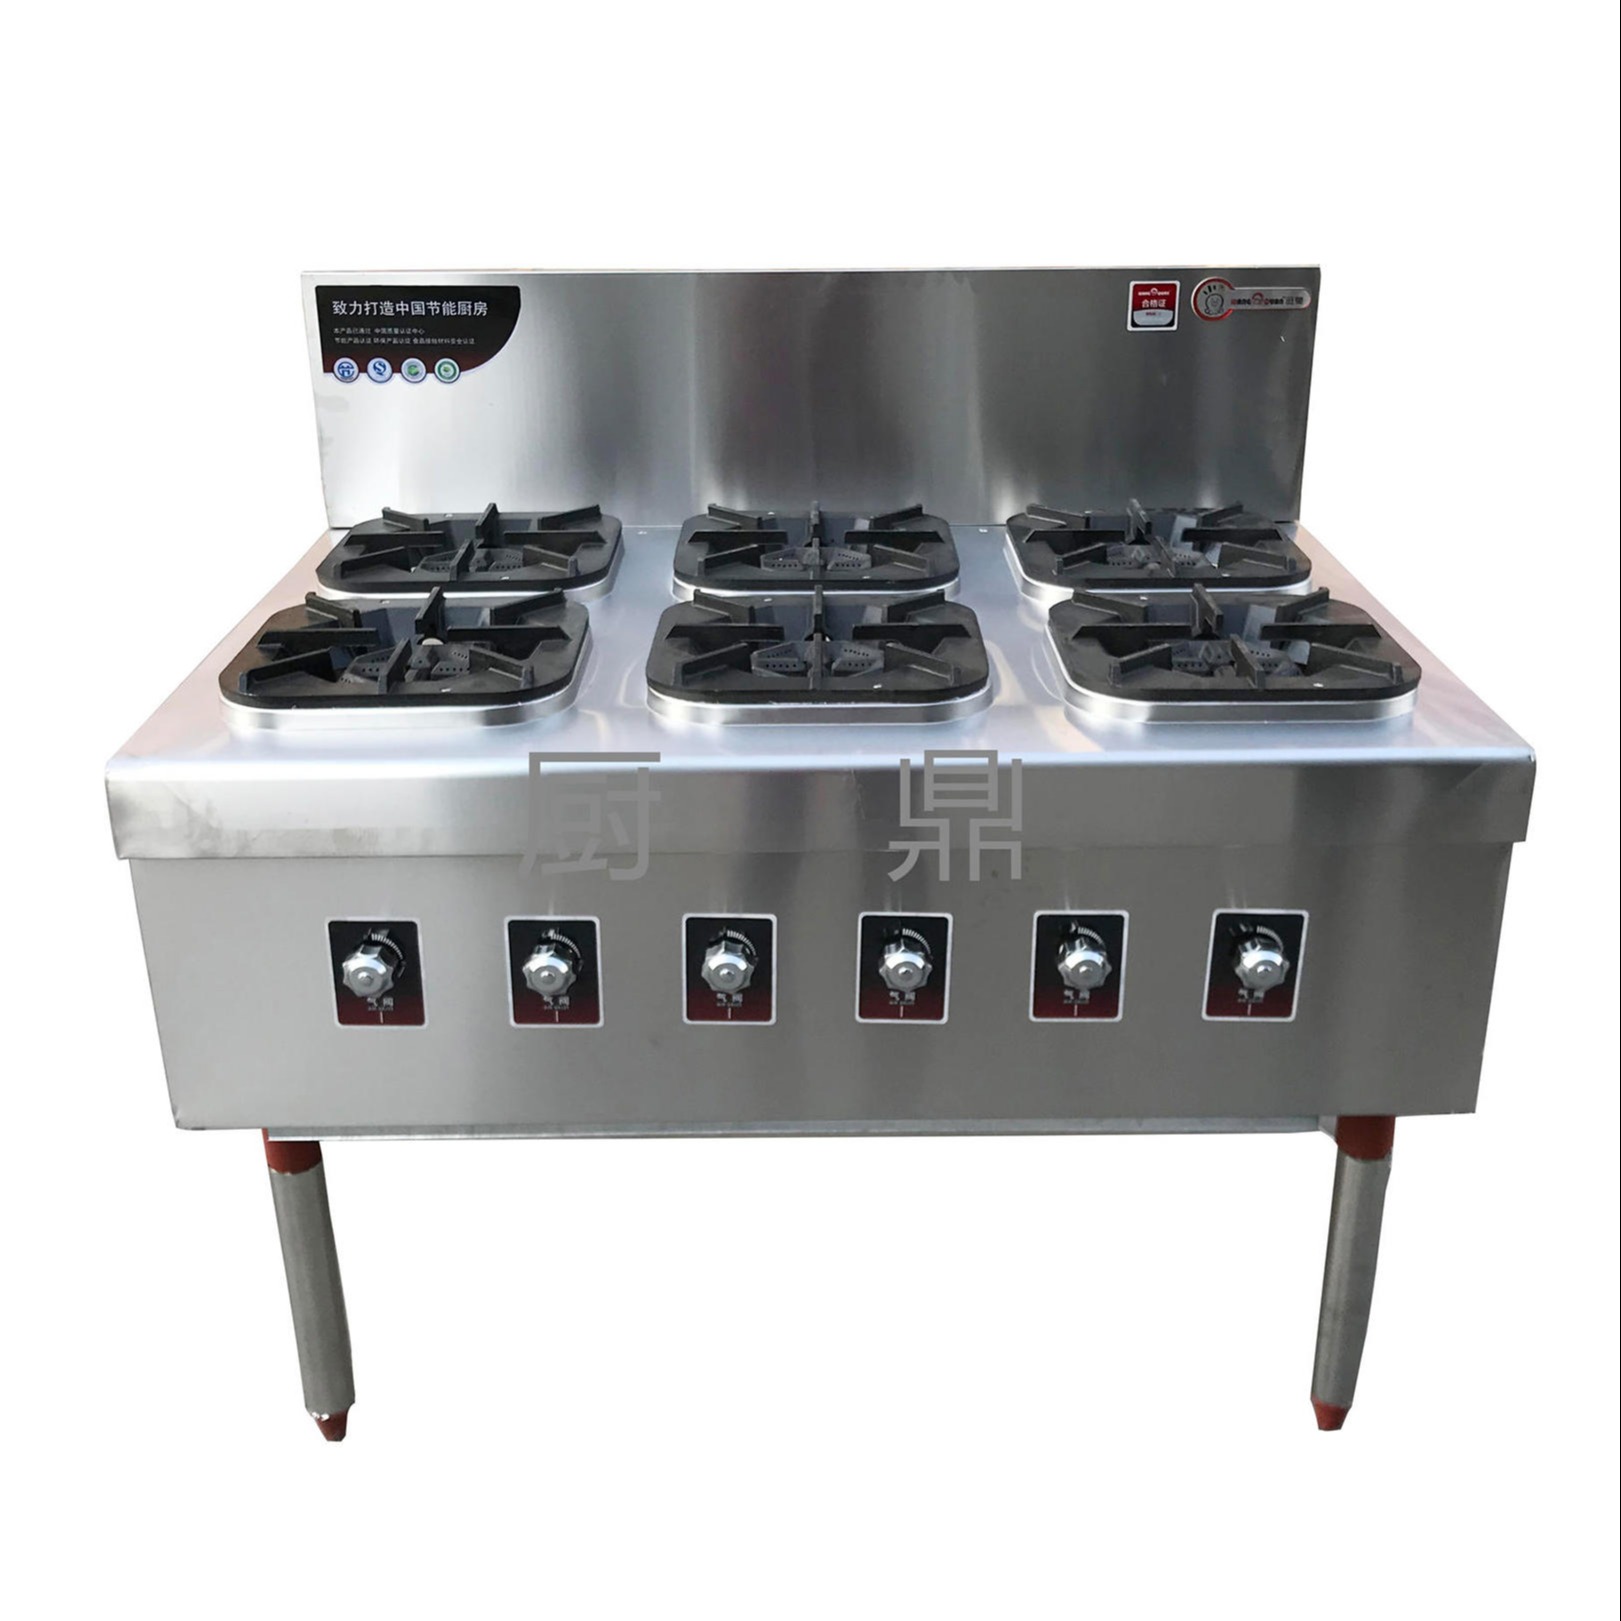 上海厨房设备公司定制燃气六头煲仔炉 中餐厅厨房设备厂家直供